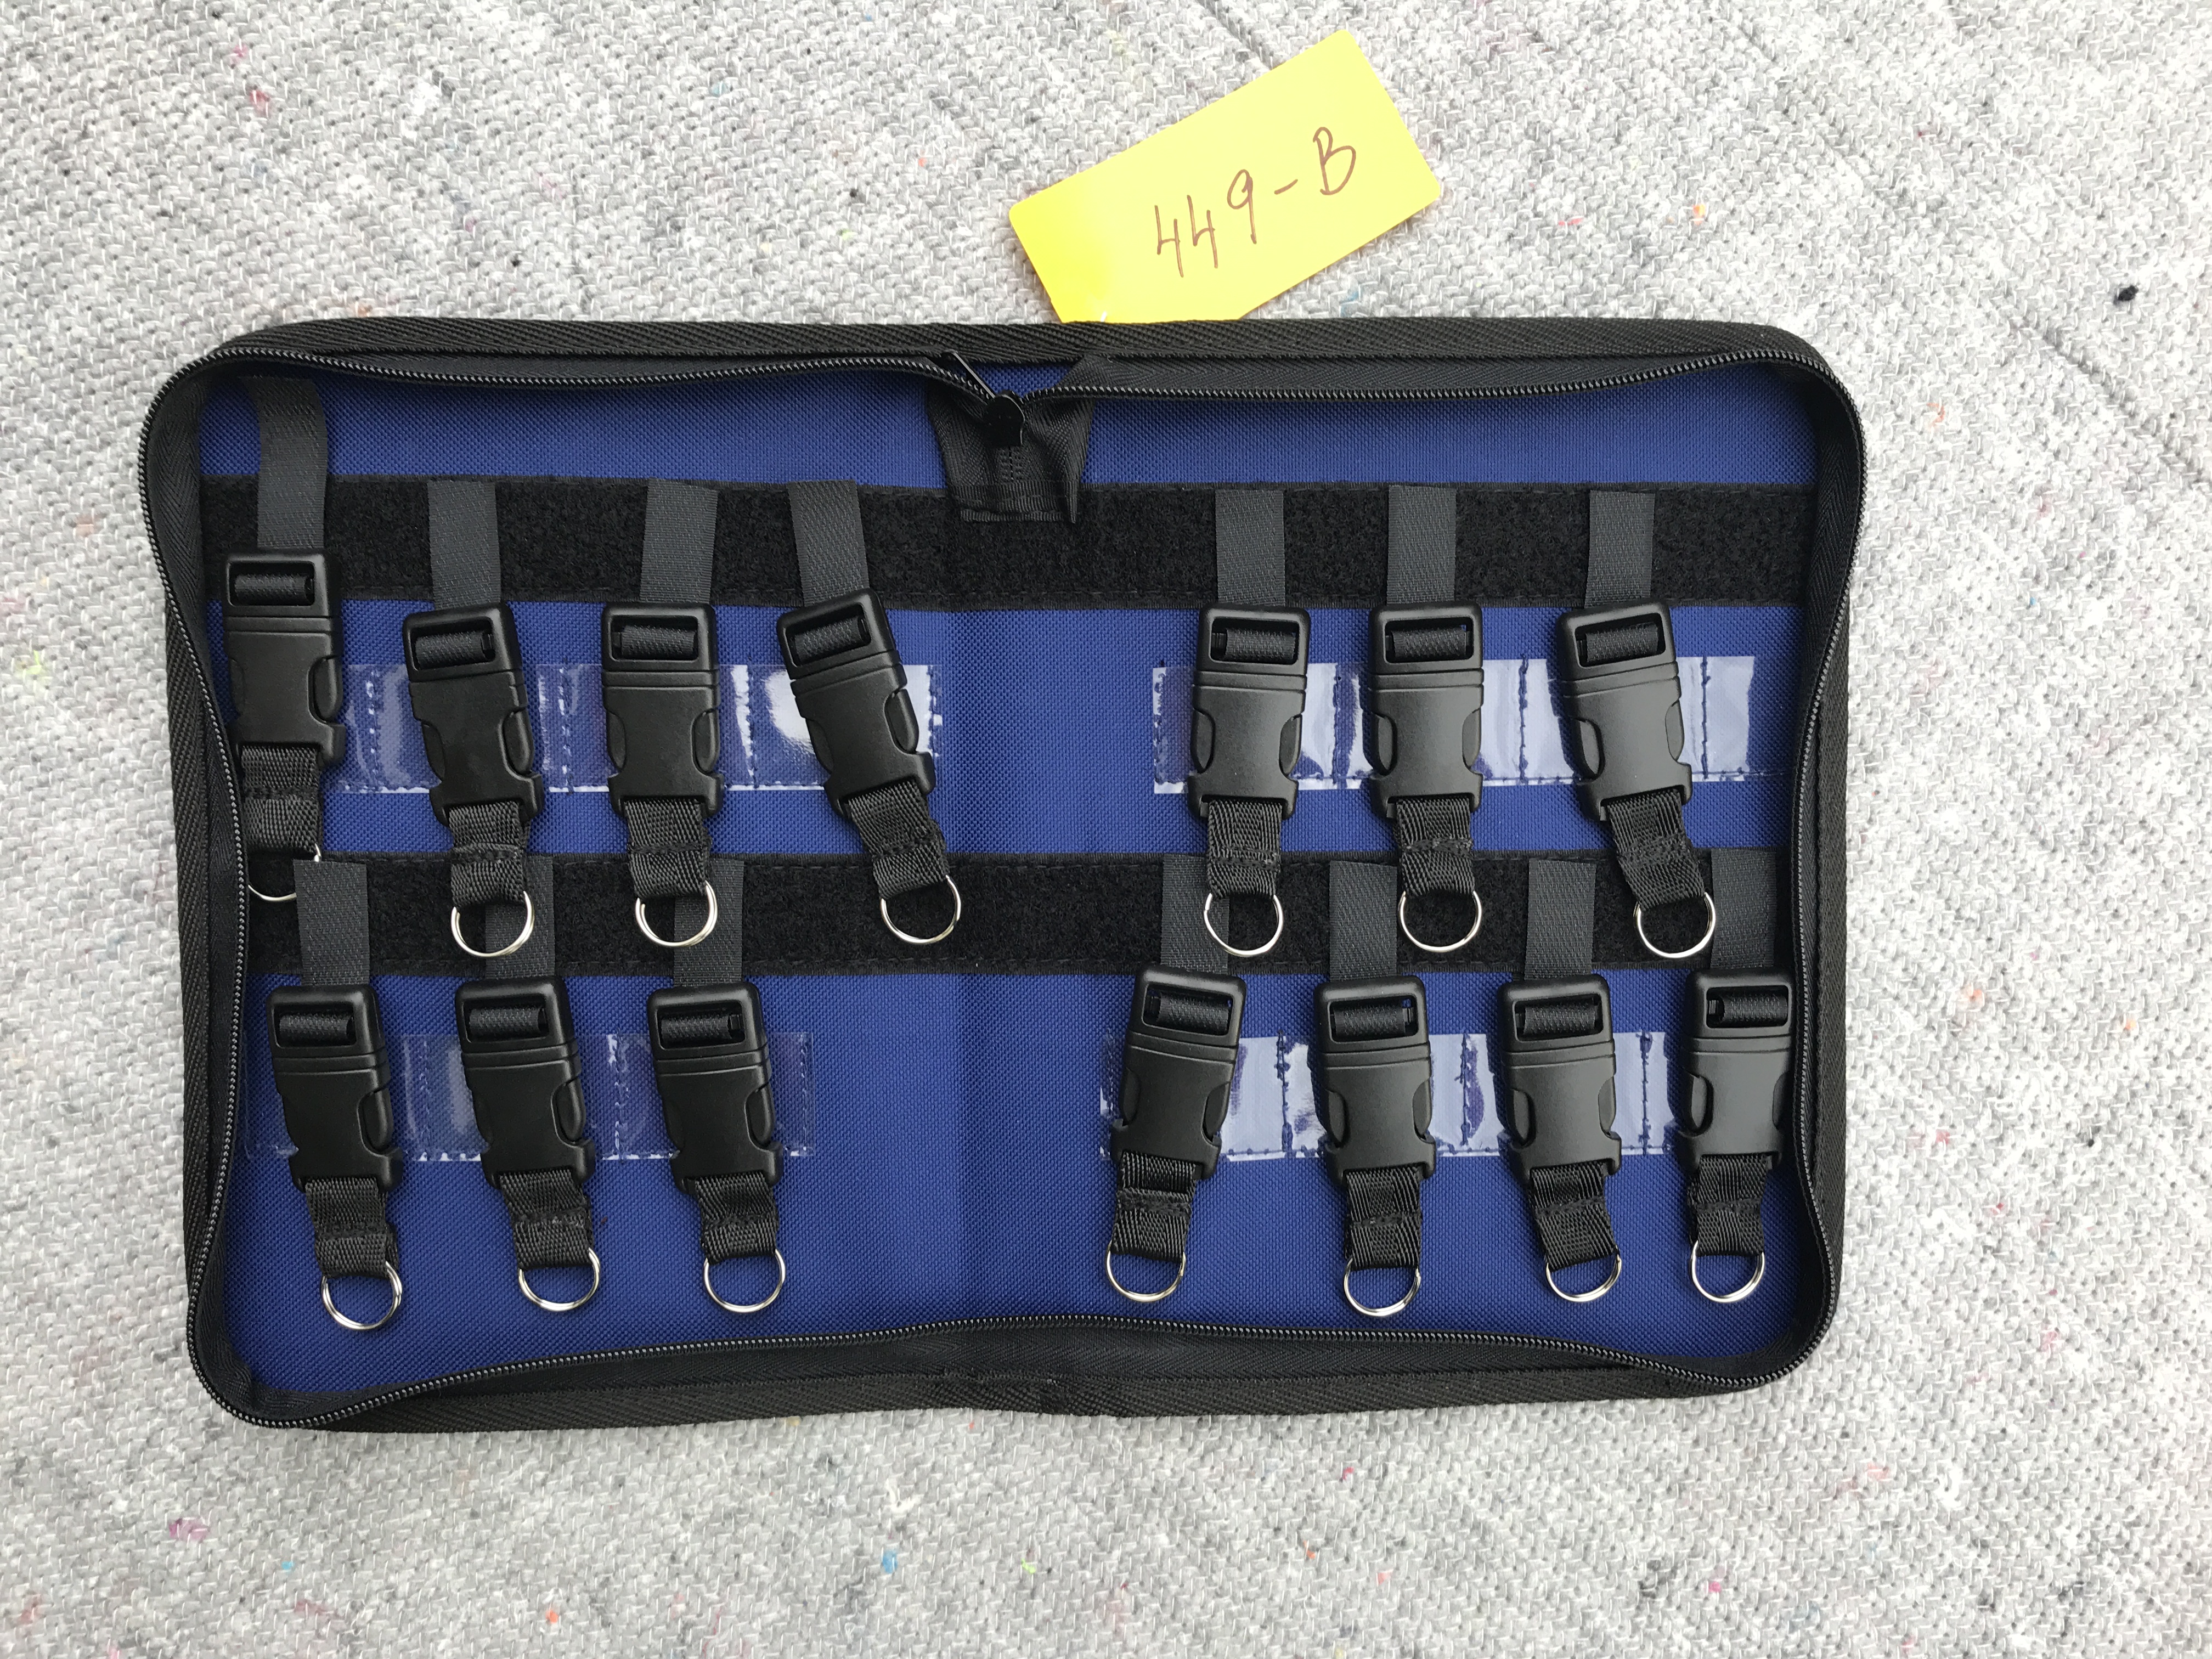 Schlsseltasche 14, Einsatzleitertasche, Wachdiensttasche, Sicherheitsdiensttasche, DIN A5, blau , abwaschbar, ohne Frontklemme